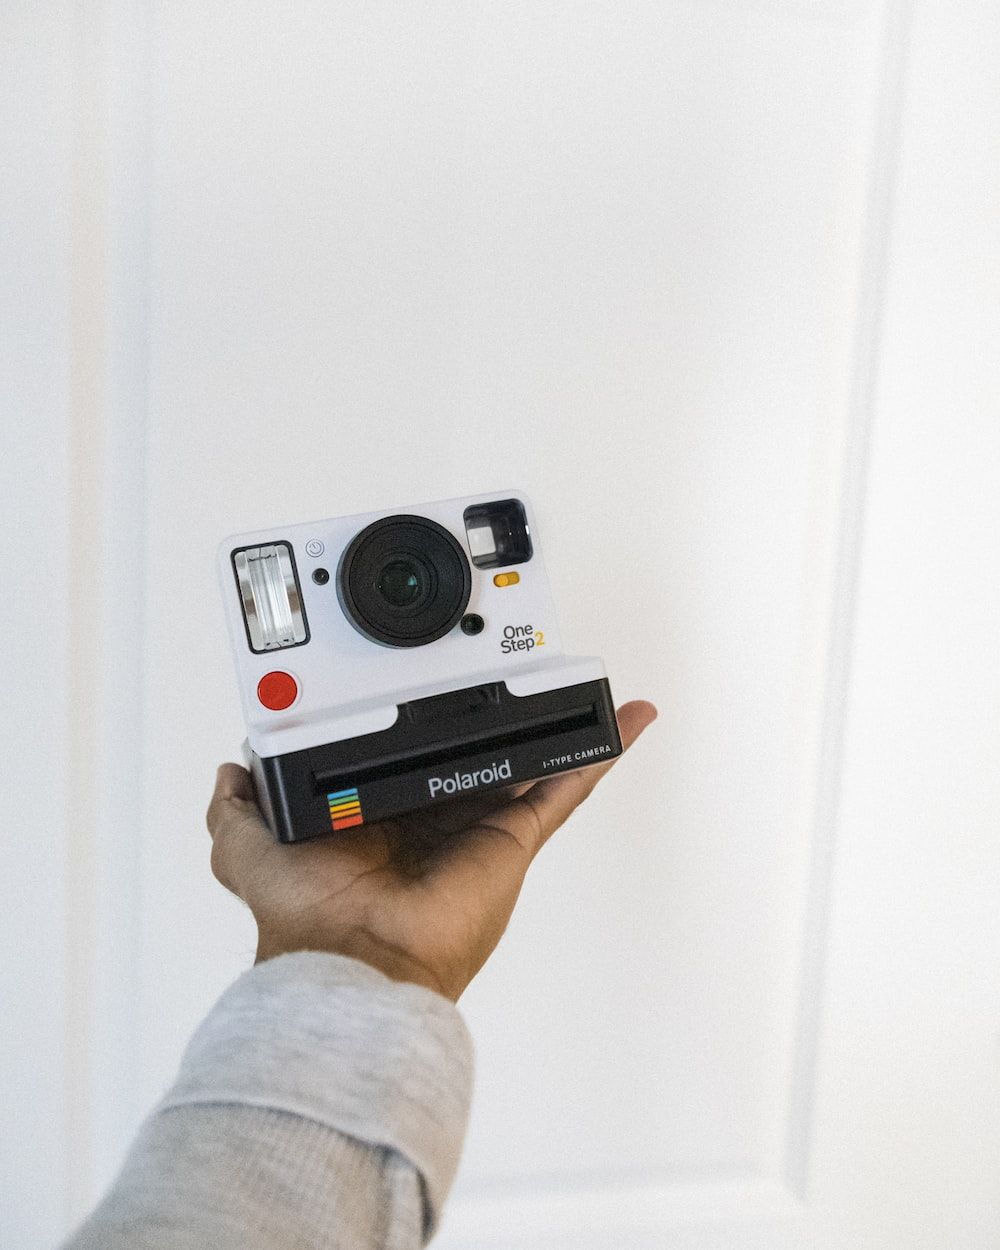 Person holding polaroid camera on white background - Polaroid